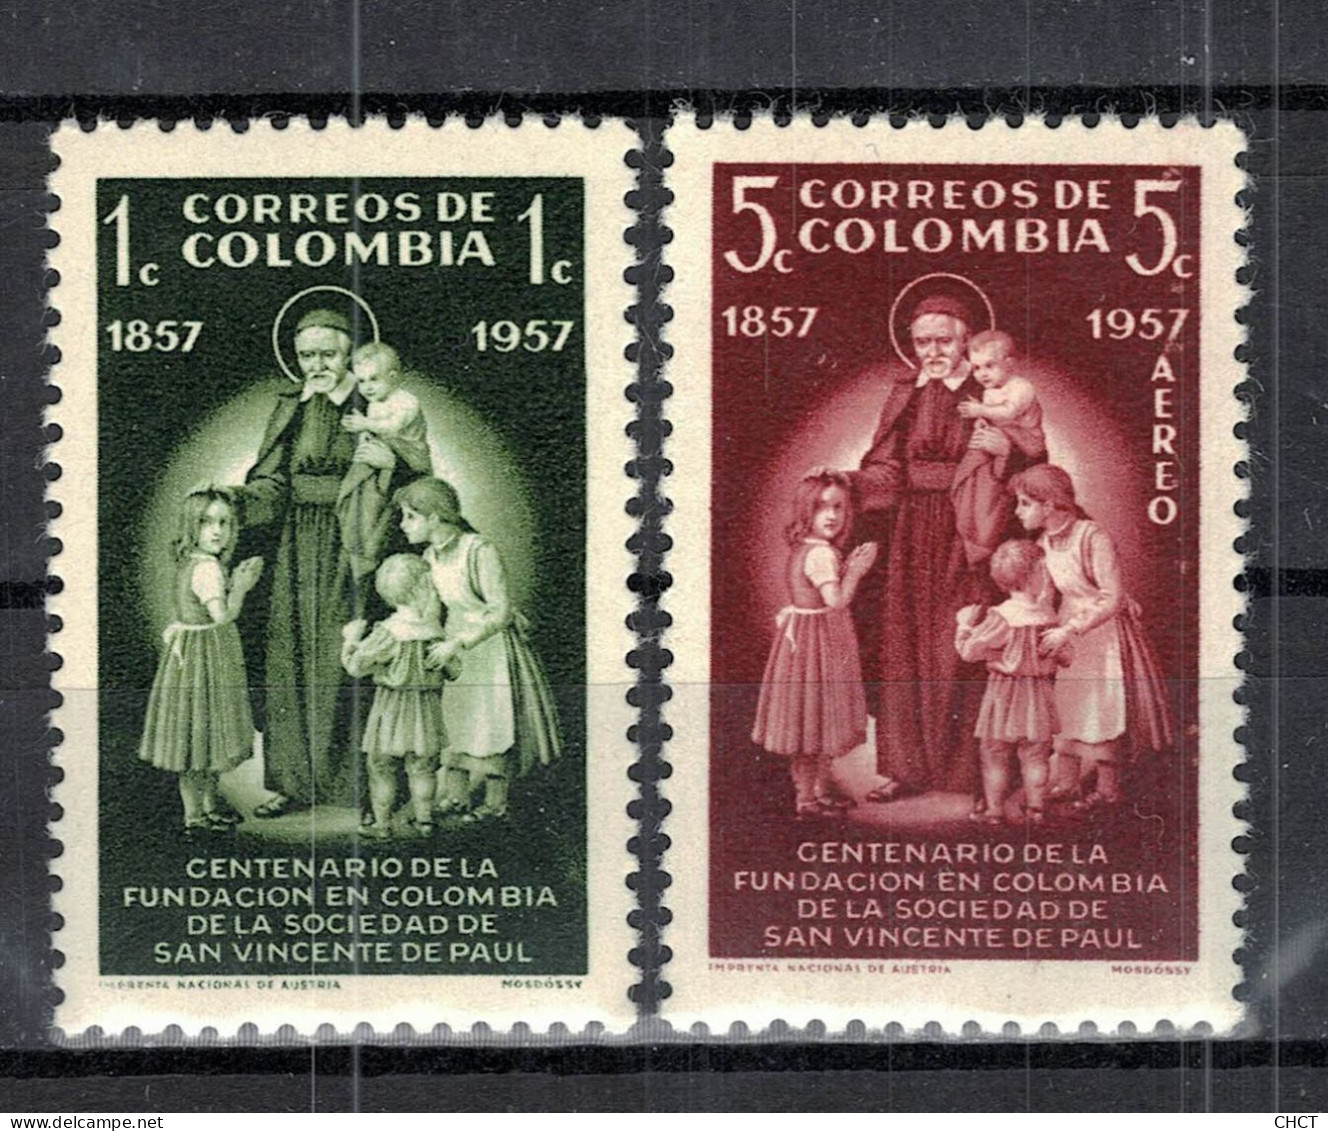 CHCT85 - Saint Vindent De Paul Centenary Commemoration, Complete Series, MH, 1957, Colombia - Colombia